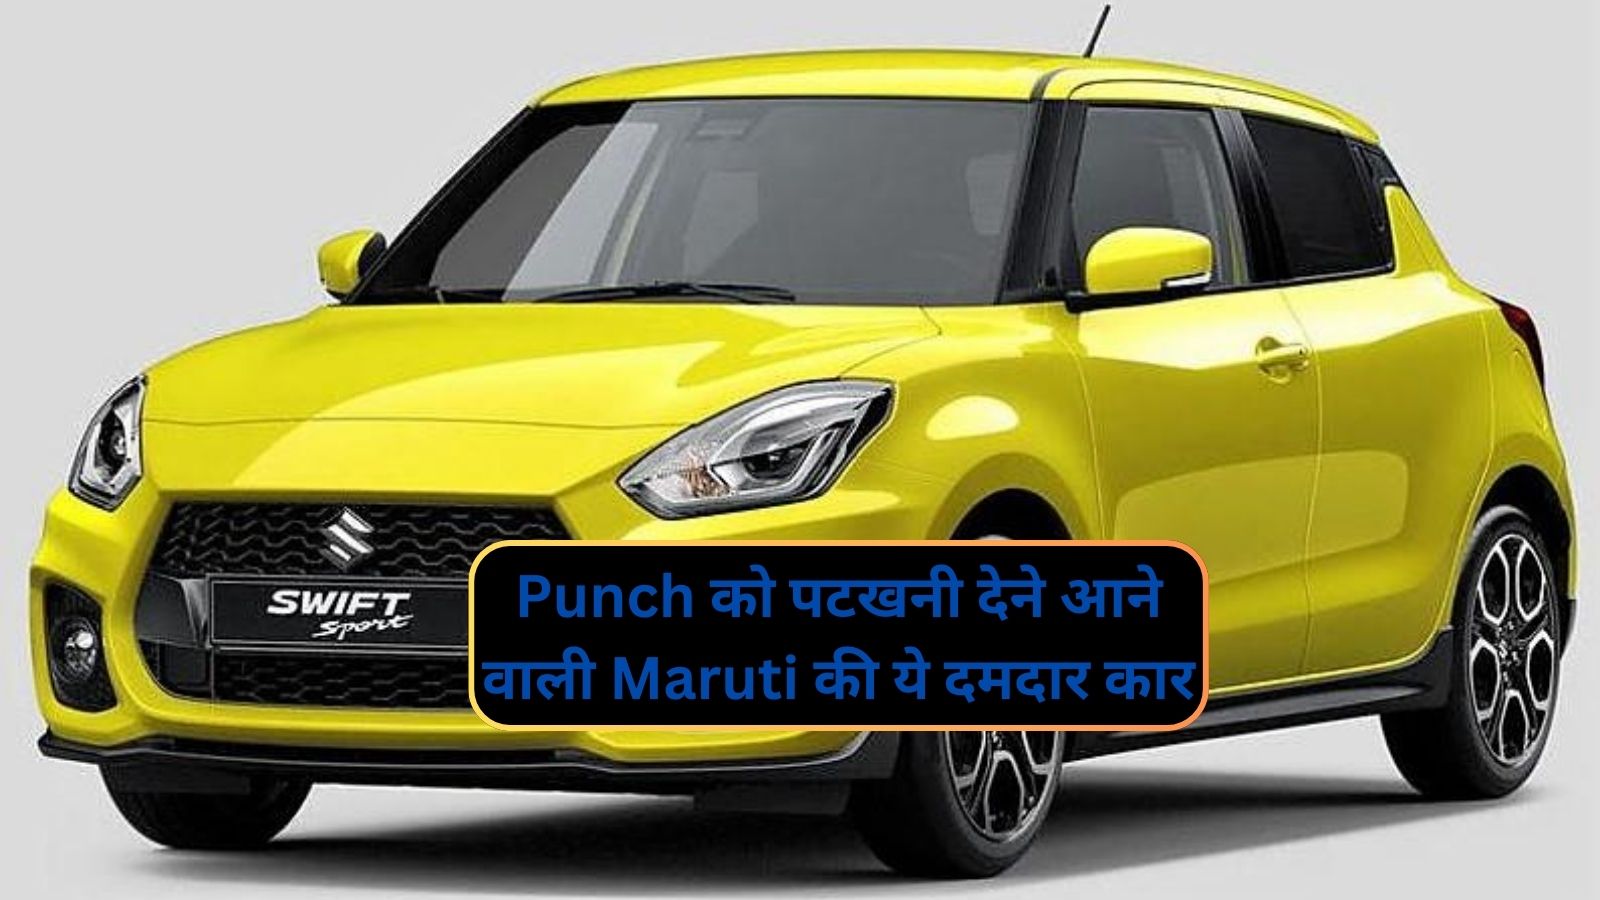 Maruti Suzuki Swift:Punch को पटखनी देने आने वाली Maruti की ये दमदार  कार,जानिए इसके लाजवाब फीचर्स और कीमत के बारे मे - dharataltimes.com